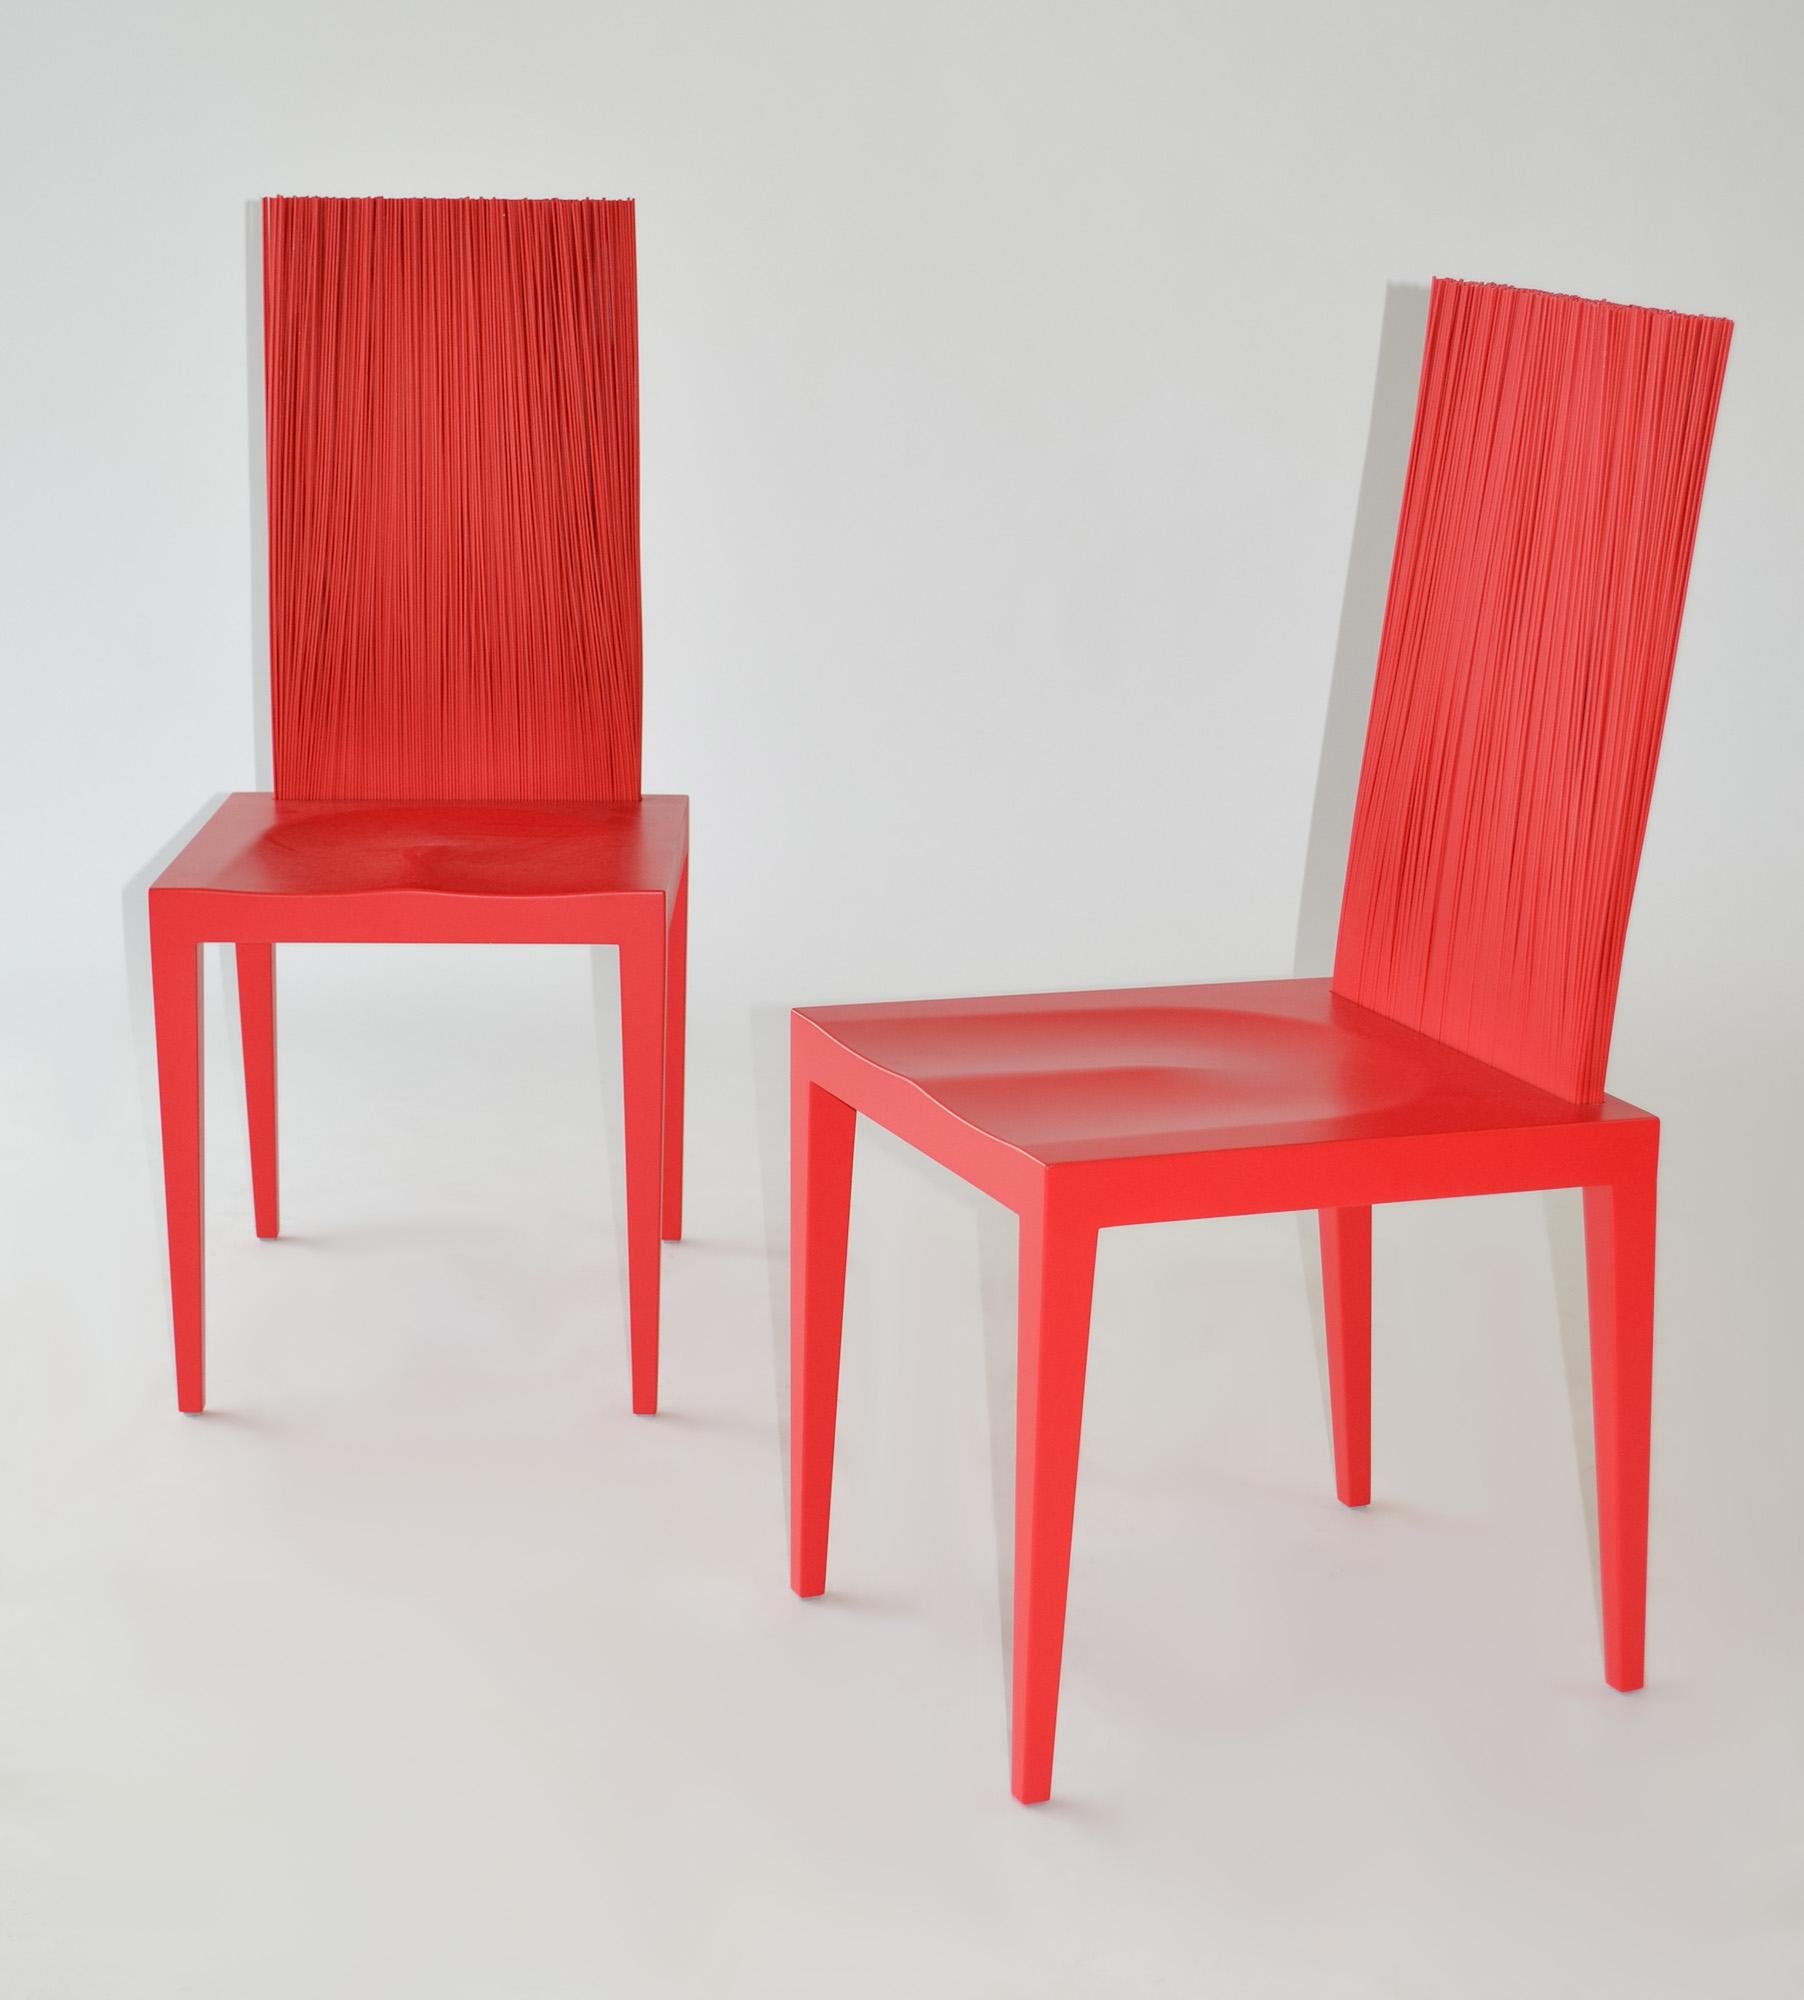  Paire de chaises des Campana Brothers pour Edra, 'Jenette'. 
Paire de chaises Jenette rouges de Fernando et Humberto Campana pour Edra, Italie, XXIe siècle.

Structure métallique trempée et coulée dans du polyuréthane rigide, revêtue d'une laque